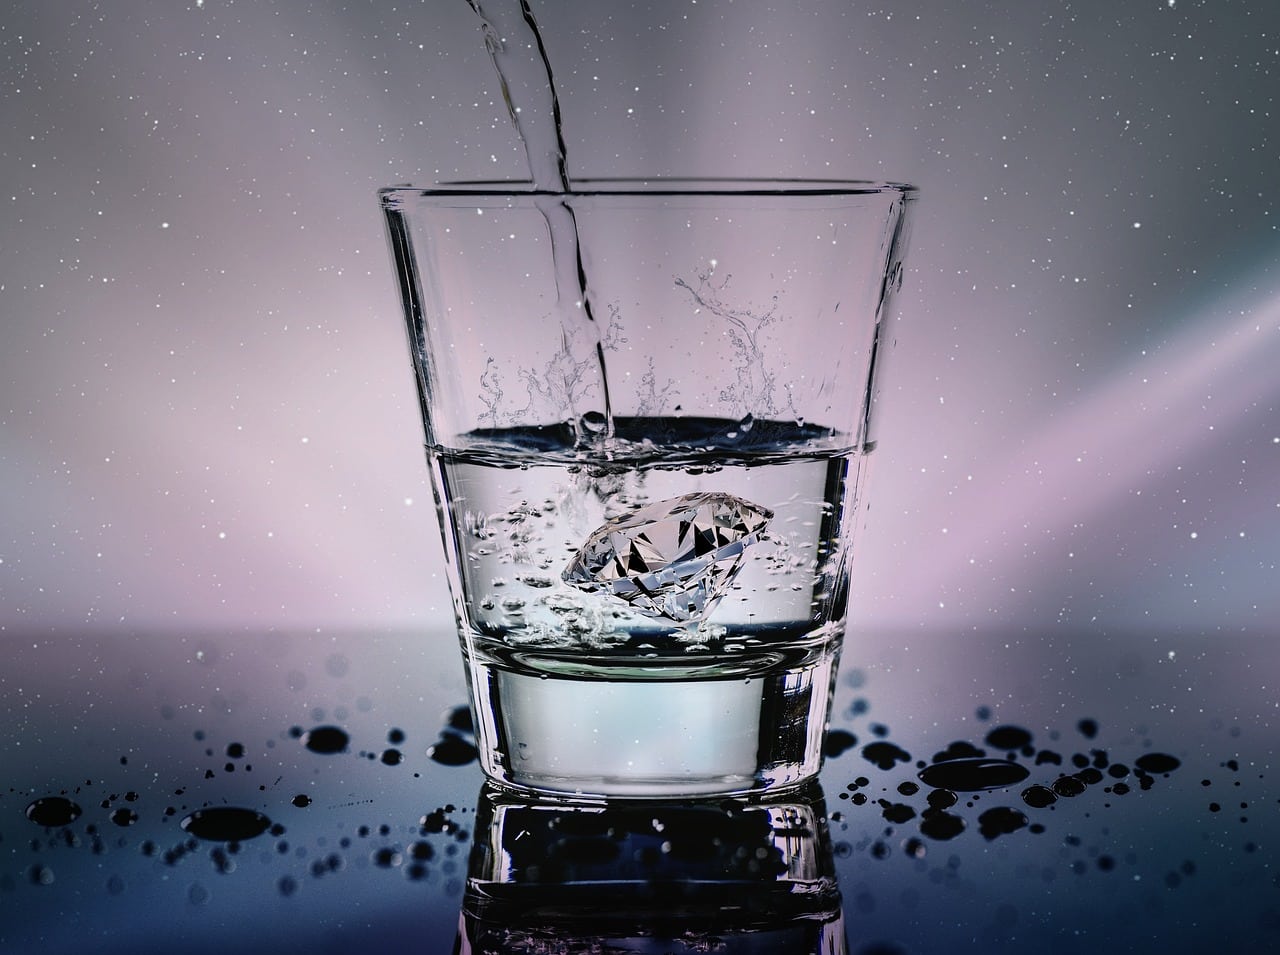 Os Benefícios do Consumo de Água Para a Saúde